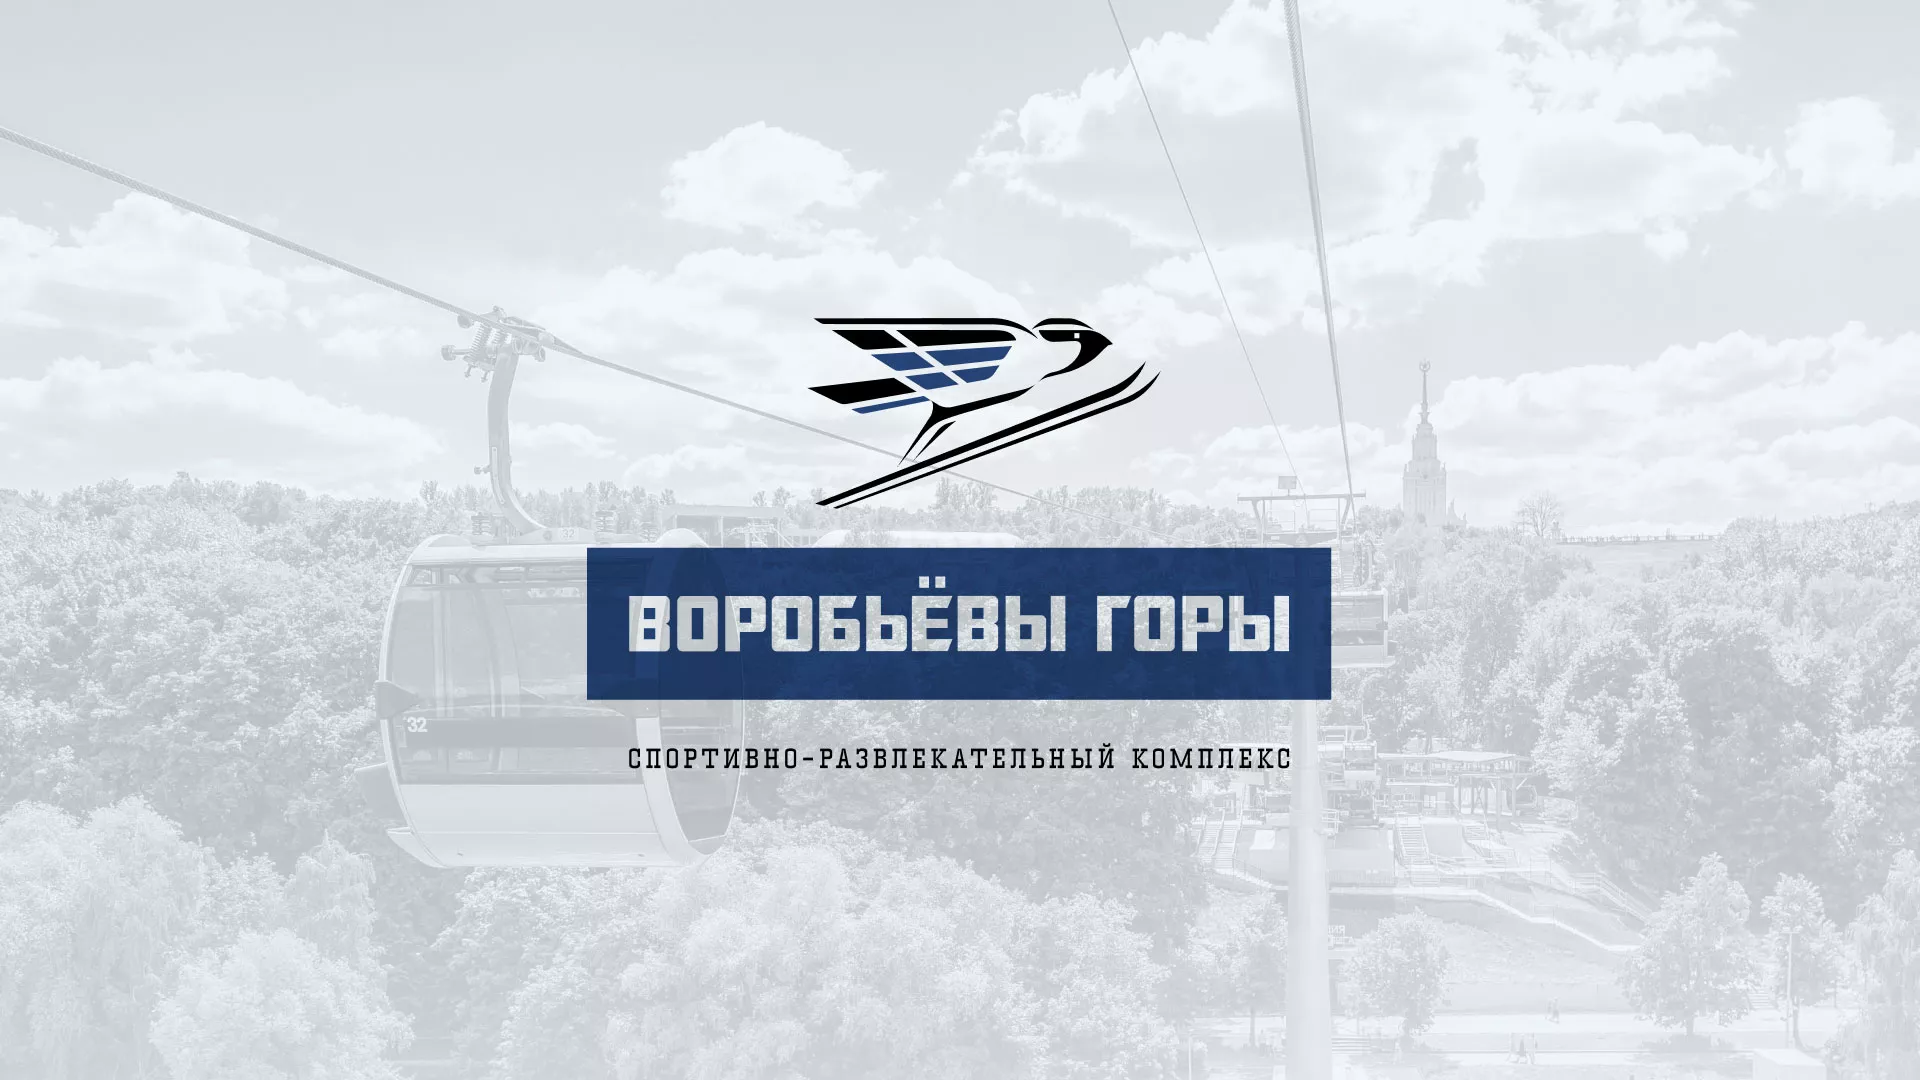 Разработка сайта в Оренбурге для спортивно-развлекательного комплекса «Воробьёвы горы»